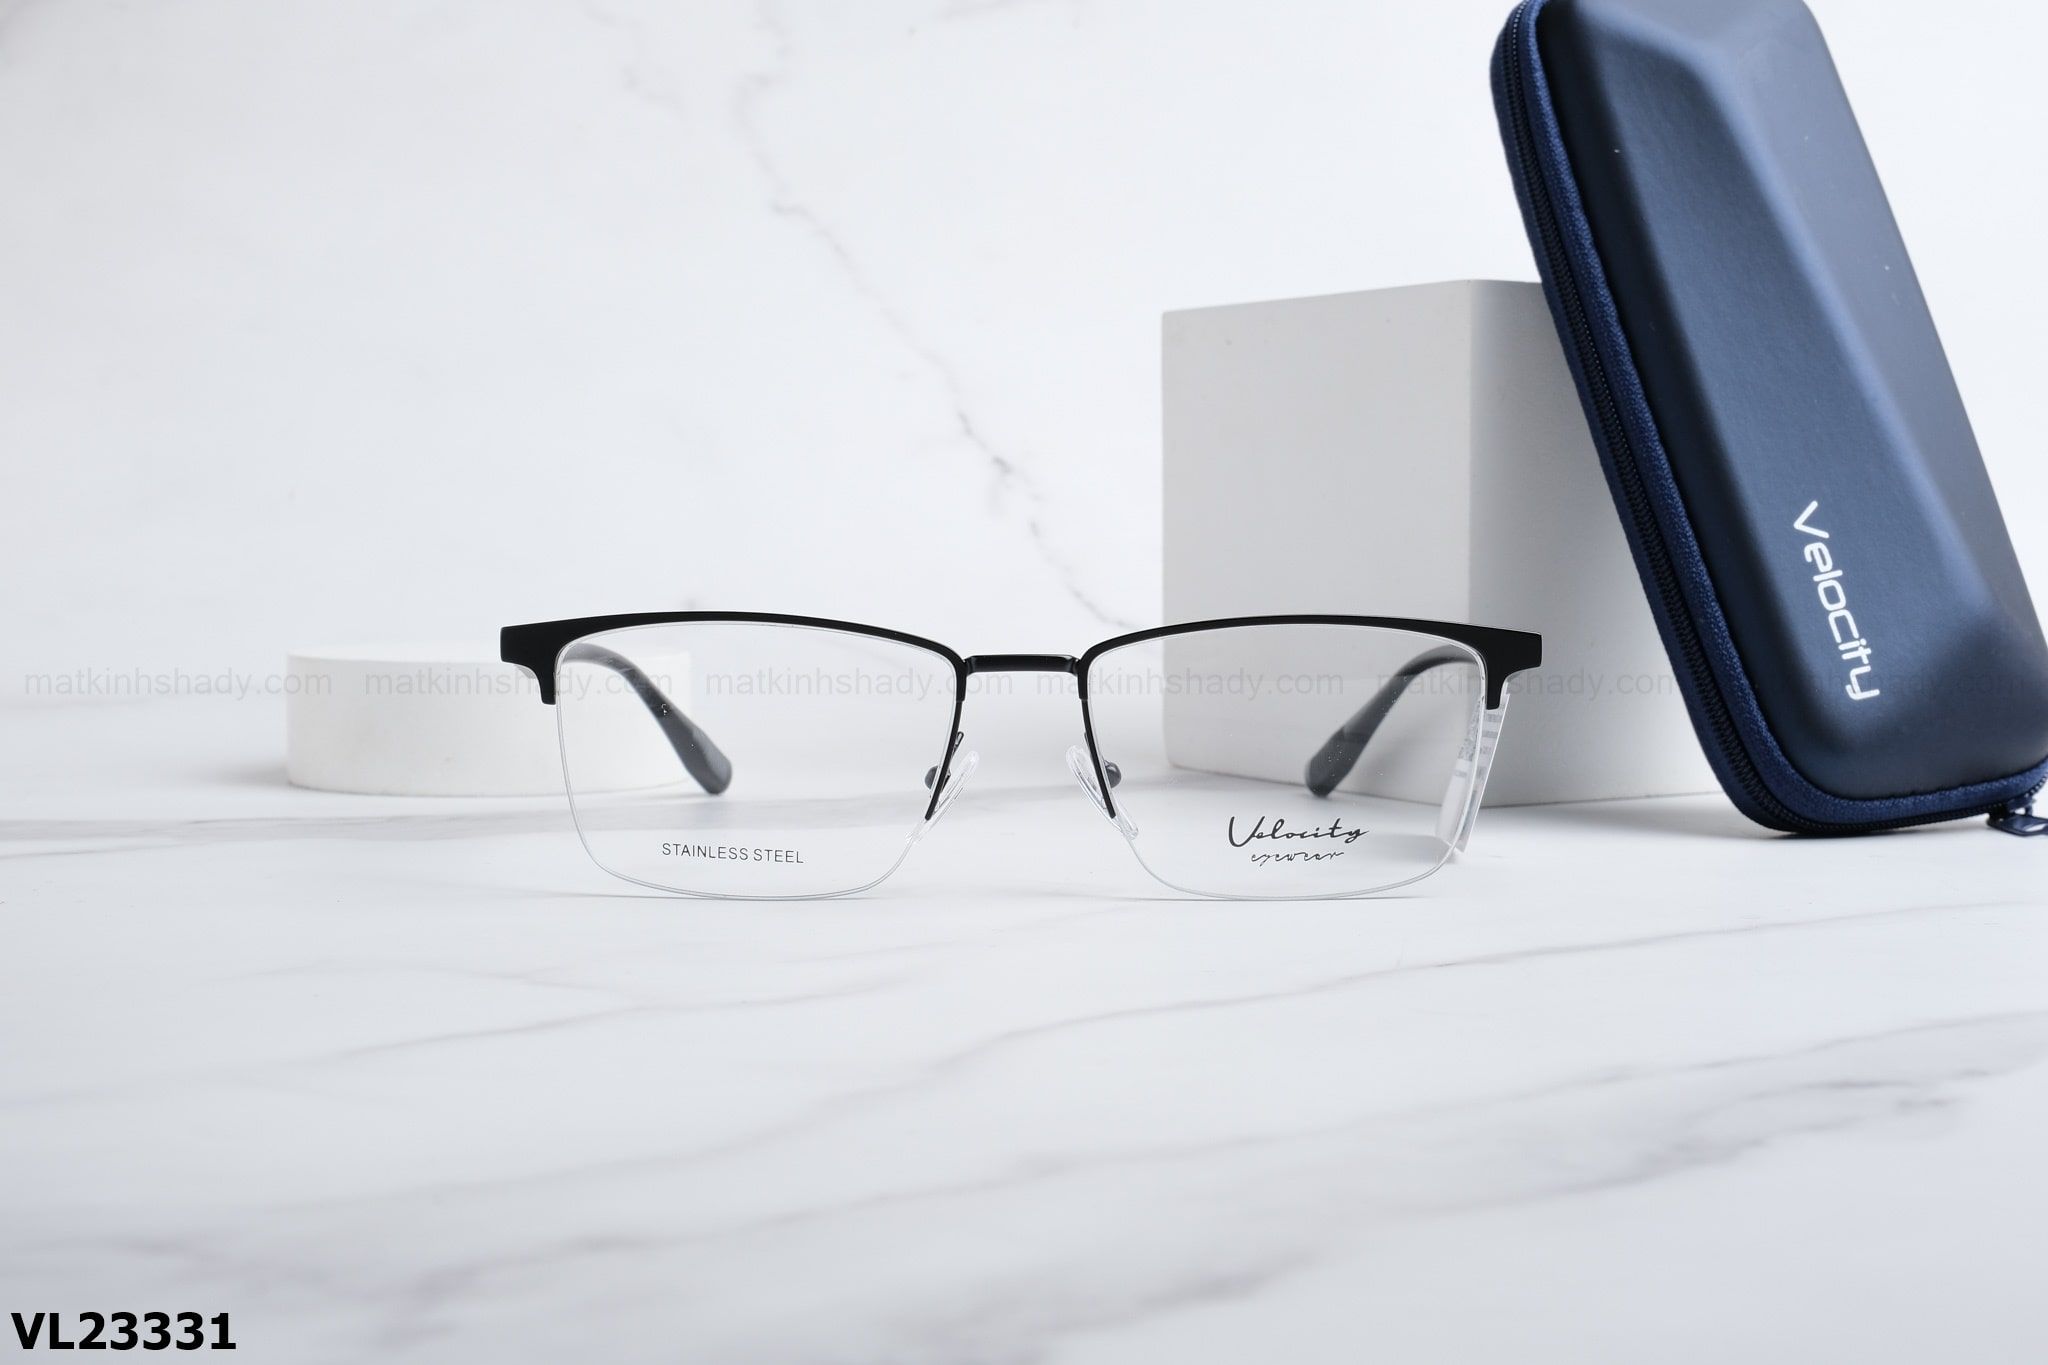  Velocity Eyewear - Glasses - VL23331 